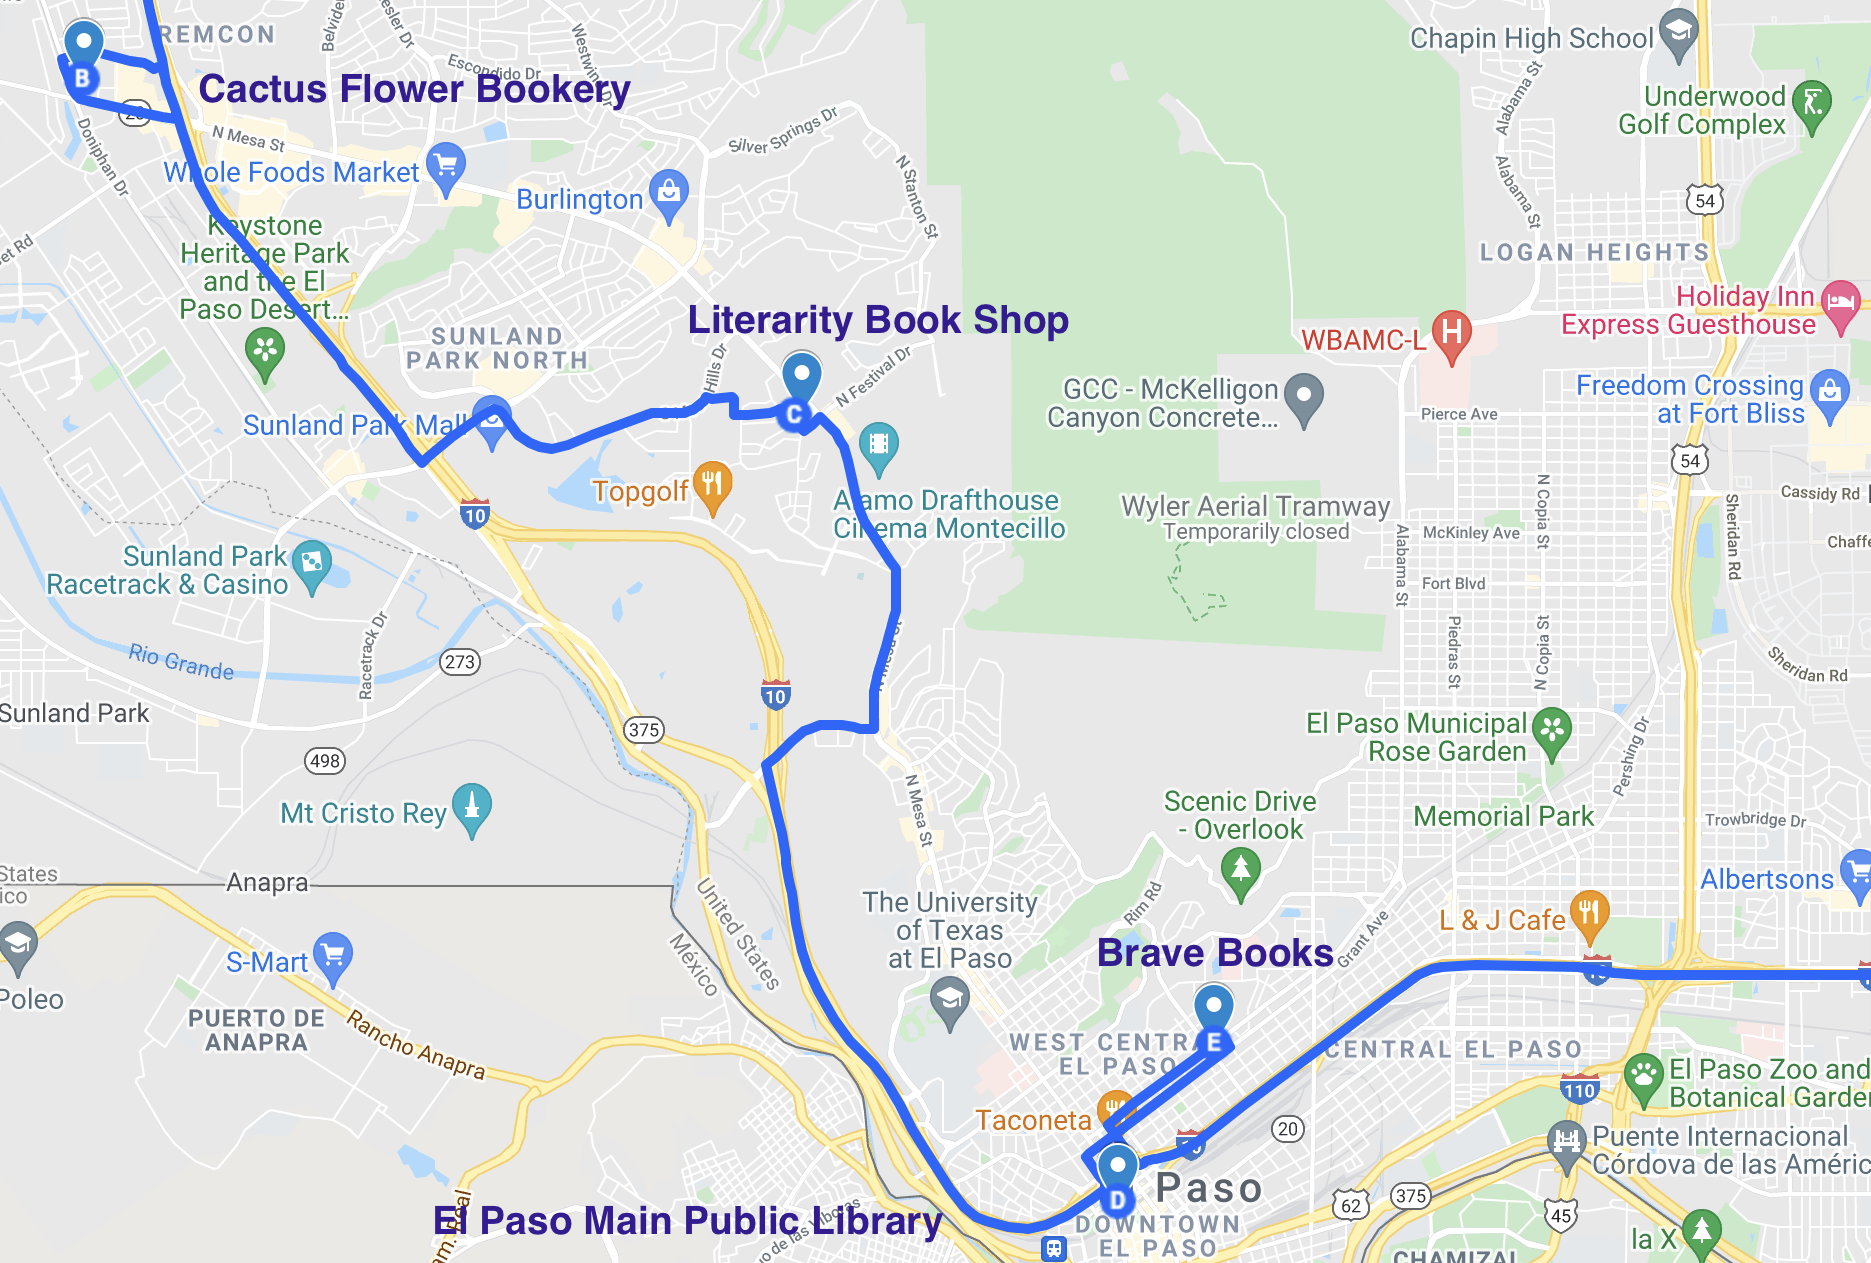 map of literary spots in el paso texas